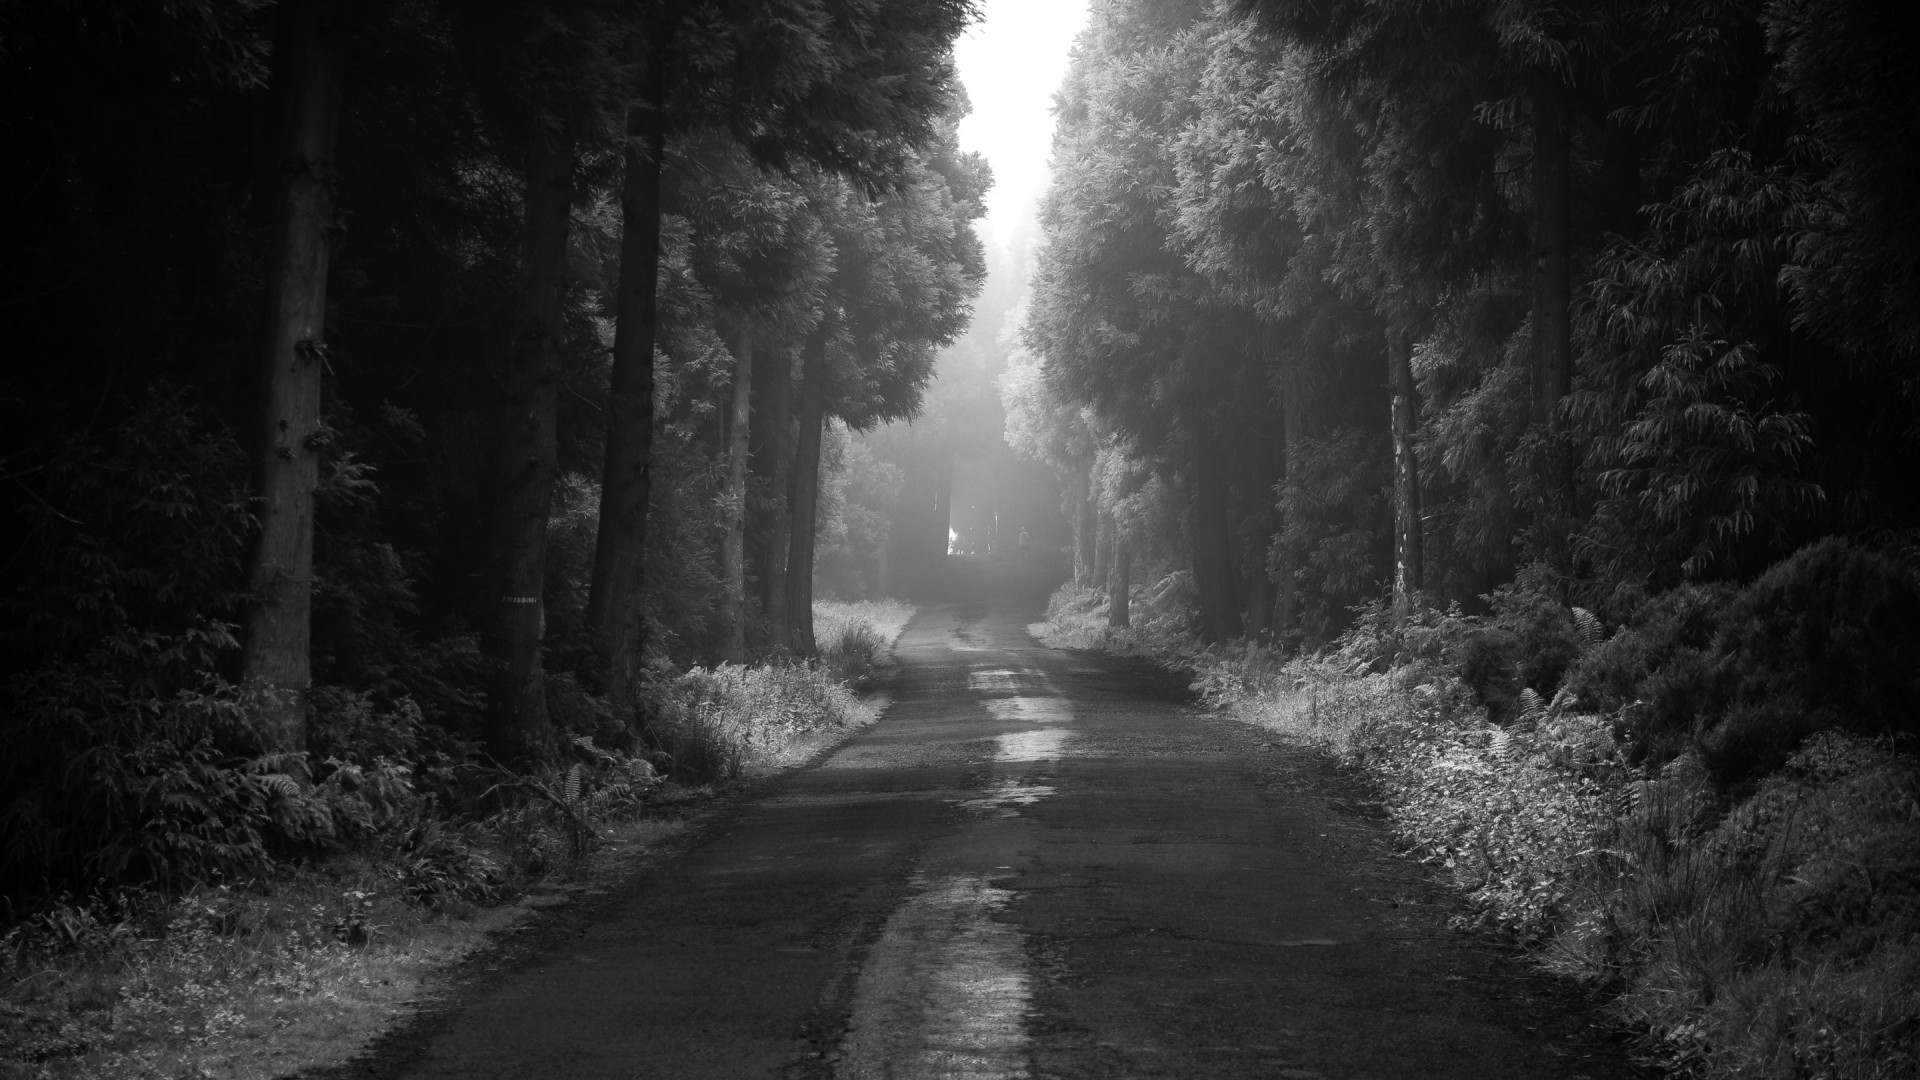 Download wallpaper: Road thru the dark forest 1920x1080